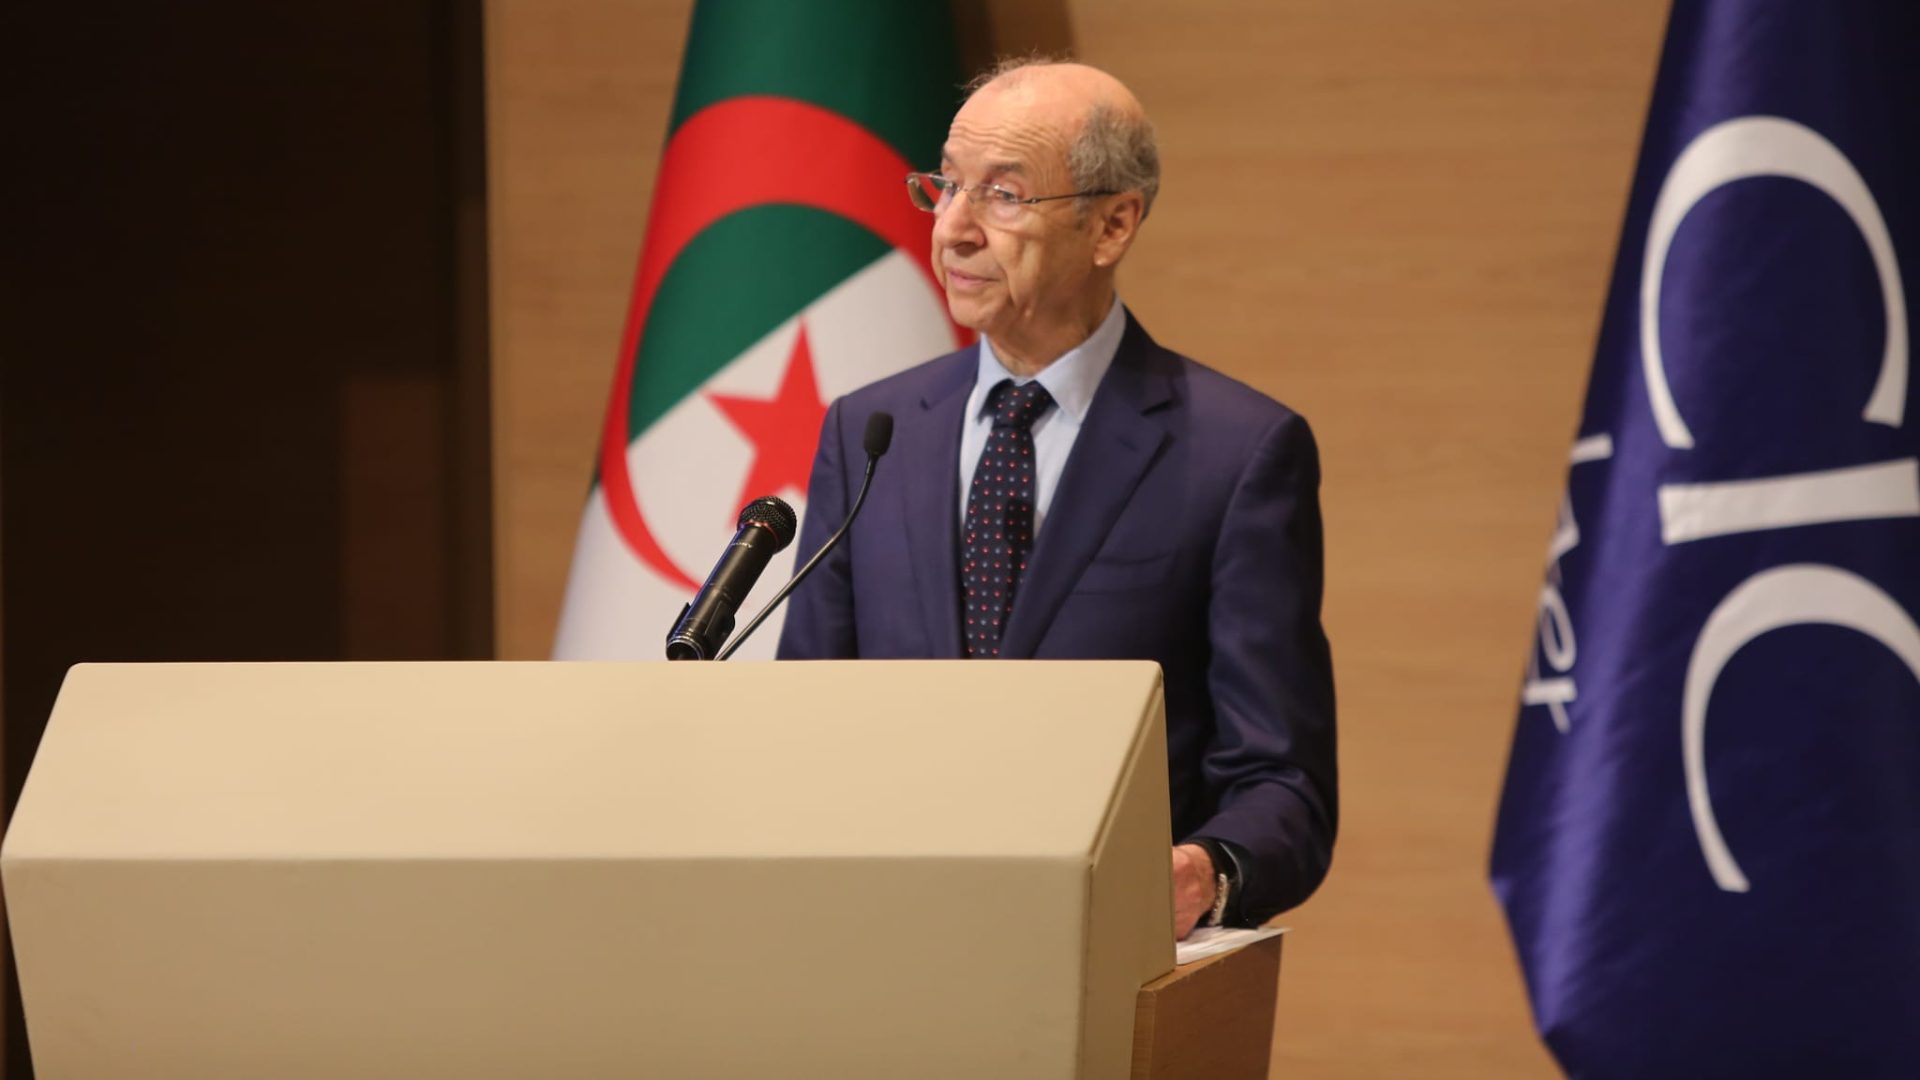 Algeria fintech e-commerce summit afes